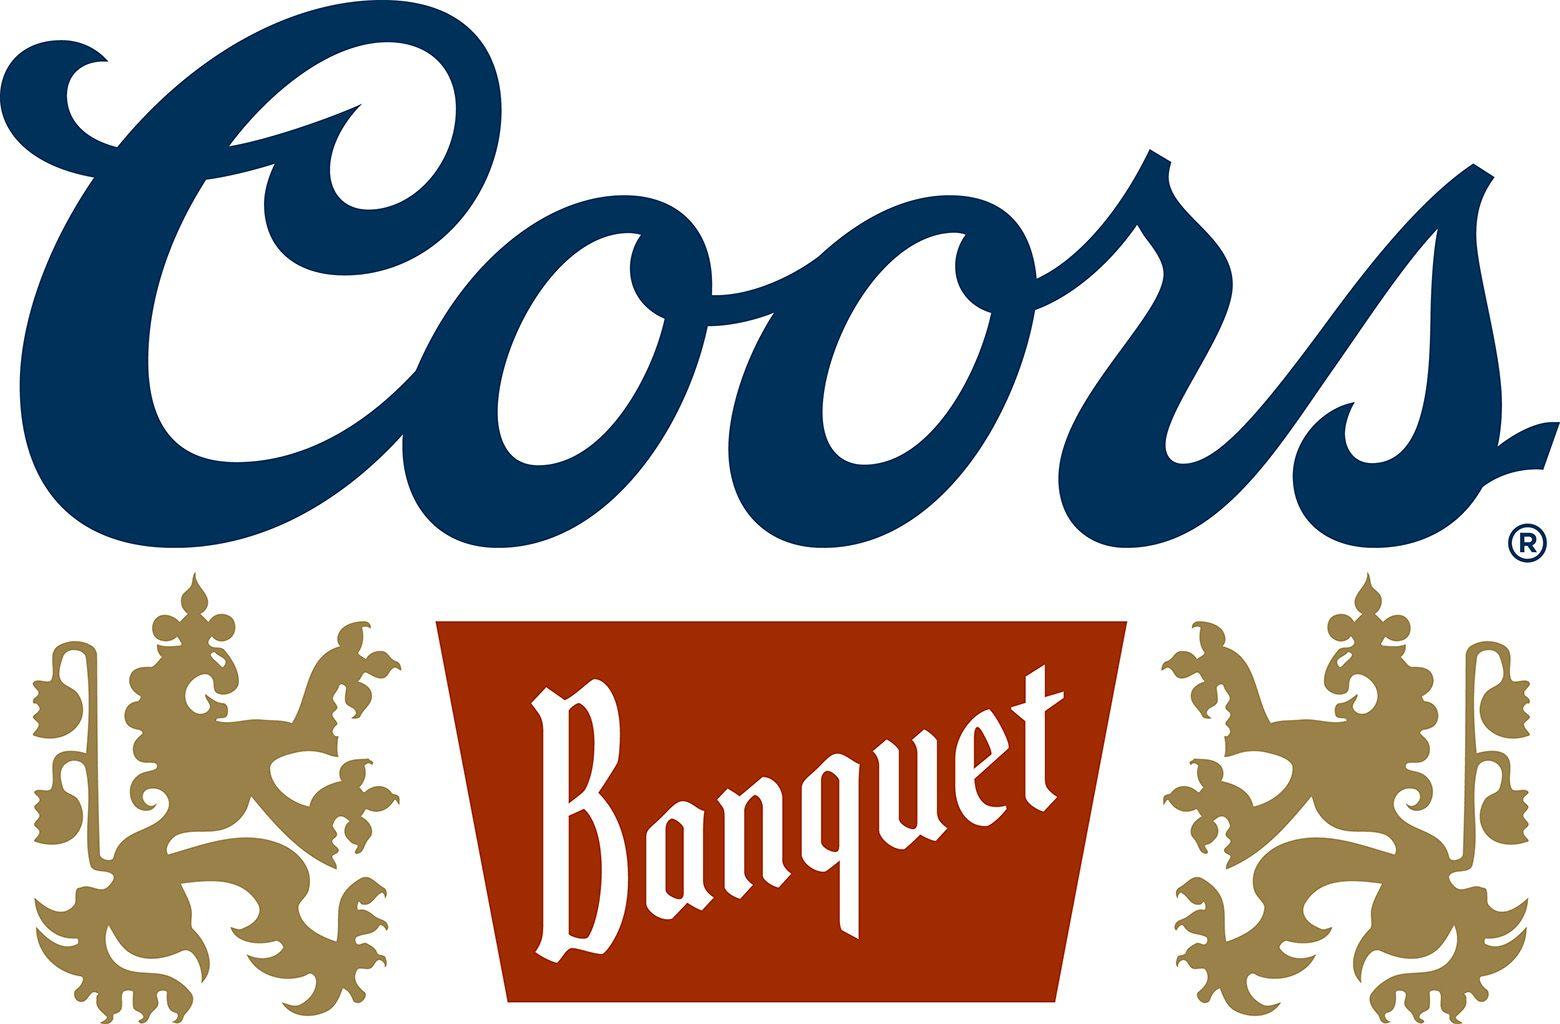 Coors Banquet Beer Logo - Coors banquet beer Logos